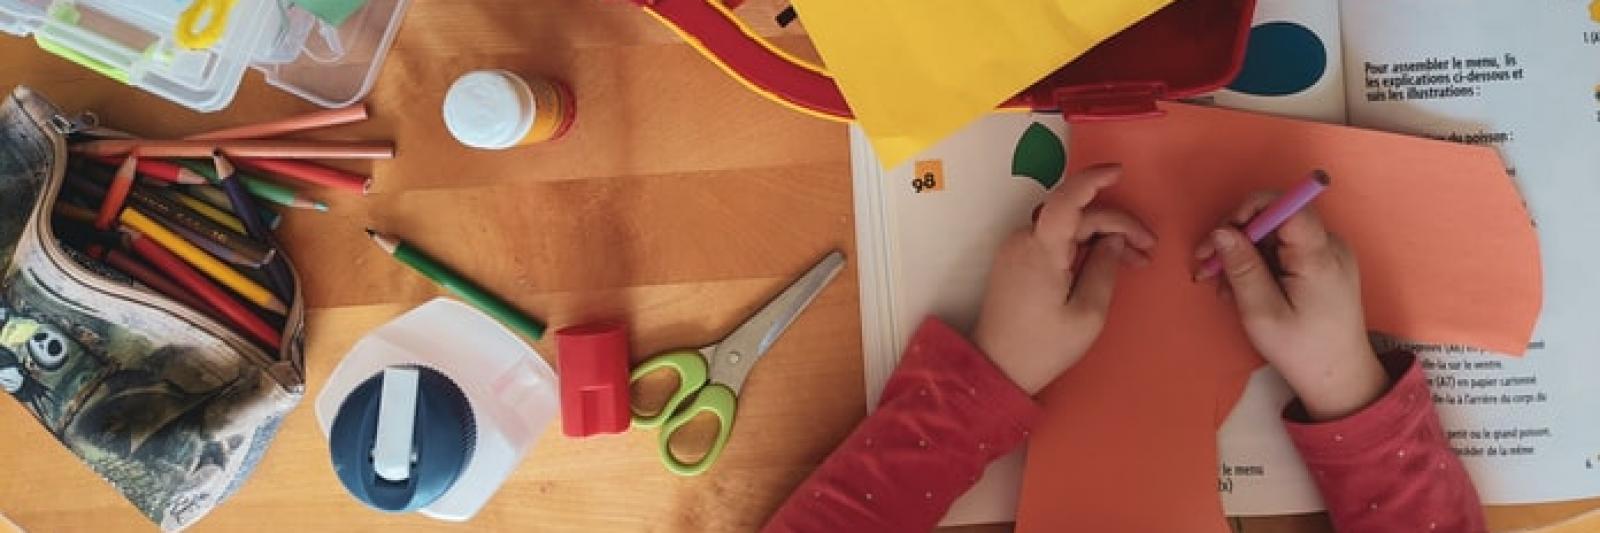 Bambino realizza un lavoretto con cartoncini e matite 